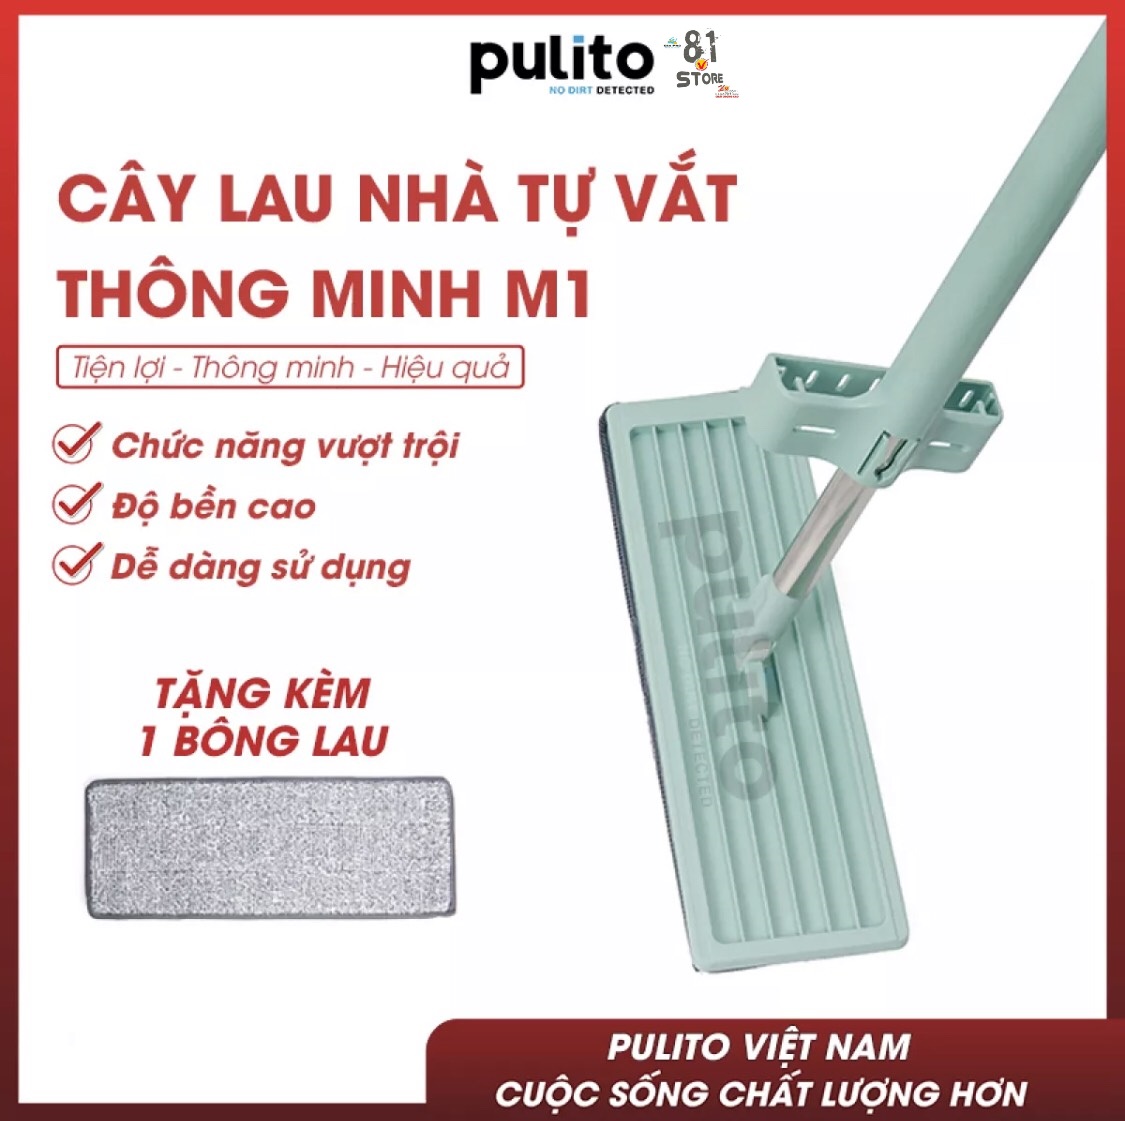 Broom mop home self extractor smart Pulito toilet door with 360 degree